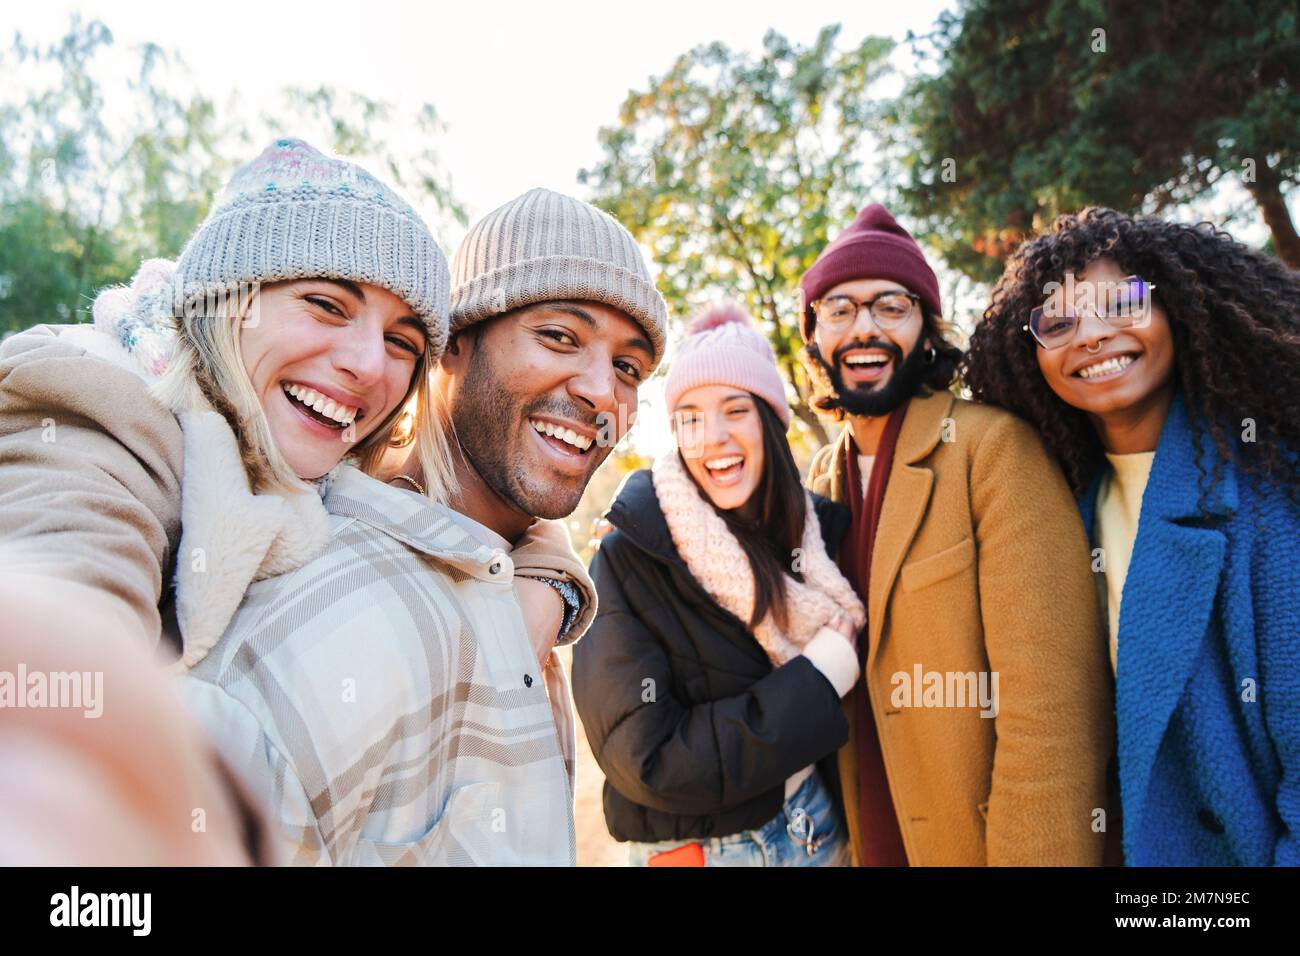 Groupe de jeunes souriant et amusant de prendre le portrait de selfie. Cinq amis heureux multiraciaux regardant l'appareil photo. Activités de plein air amusantes des étudiants gais loin de la maison. Concept Lifetyle. Photo de haute qualité Banque D'Images